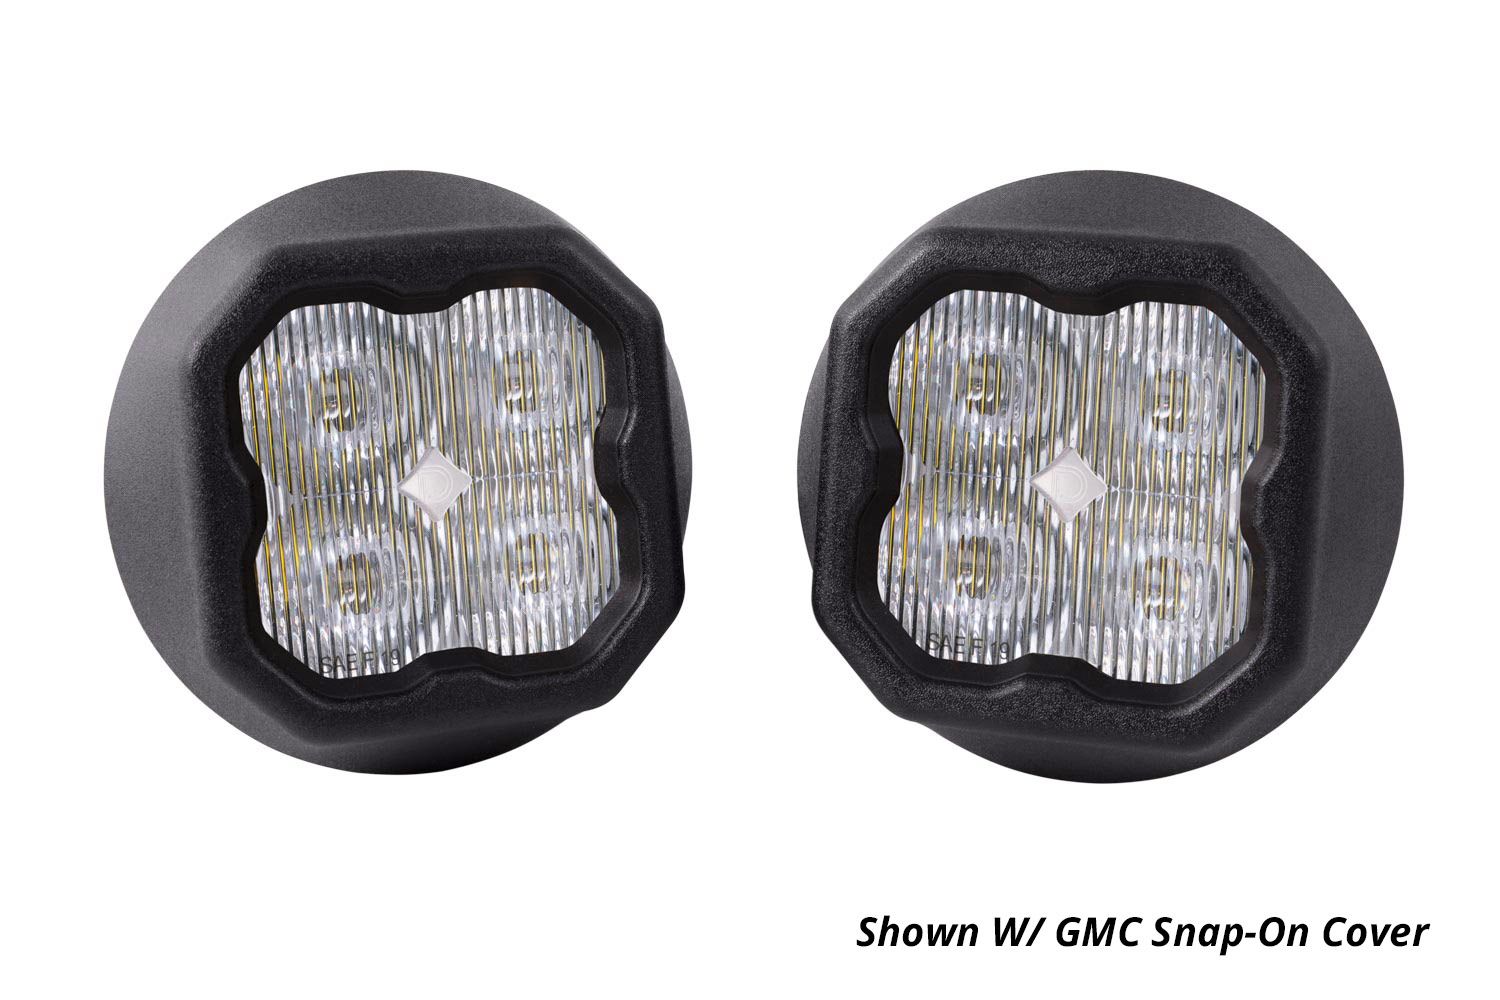 SS3 LED Fog Light Kit for 2015-2022 Chevrolet Colorado